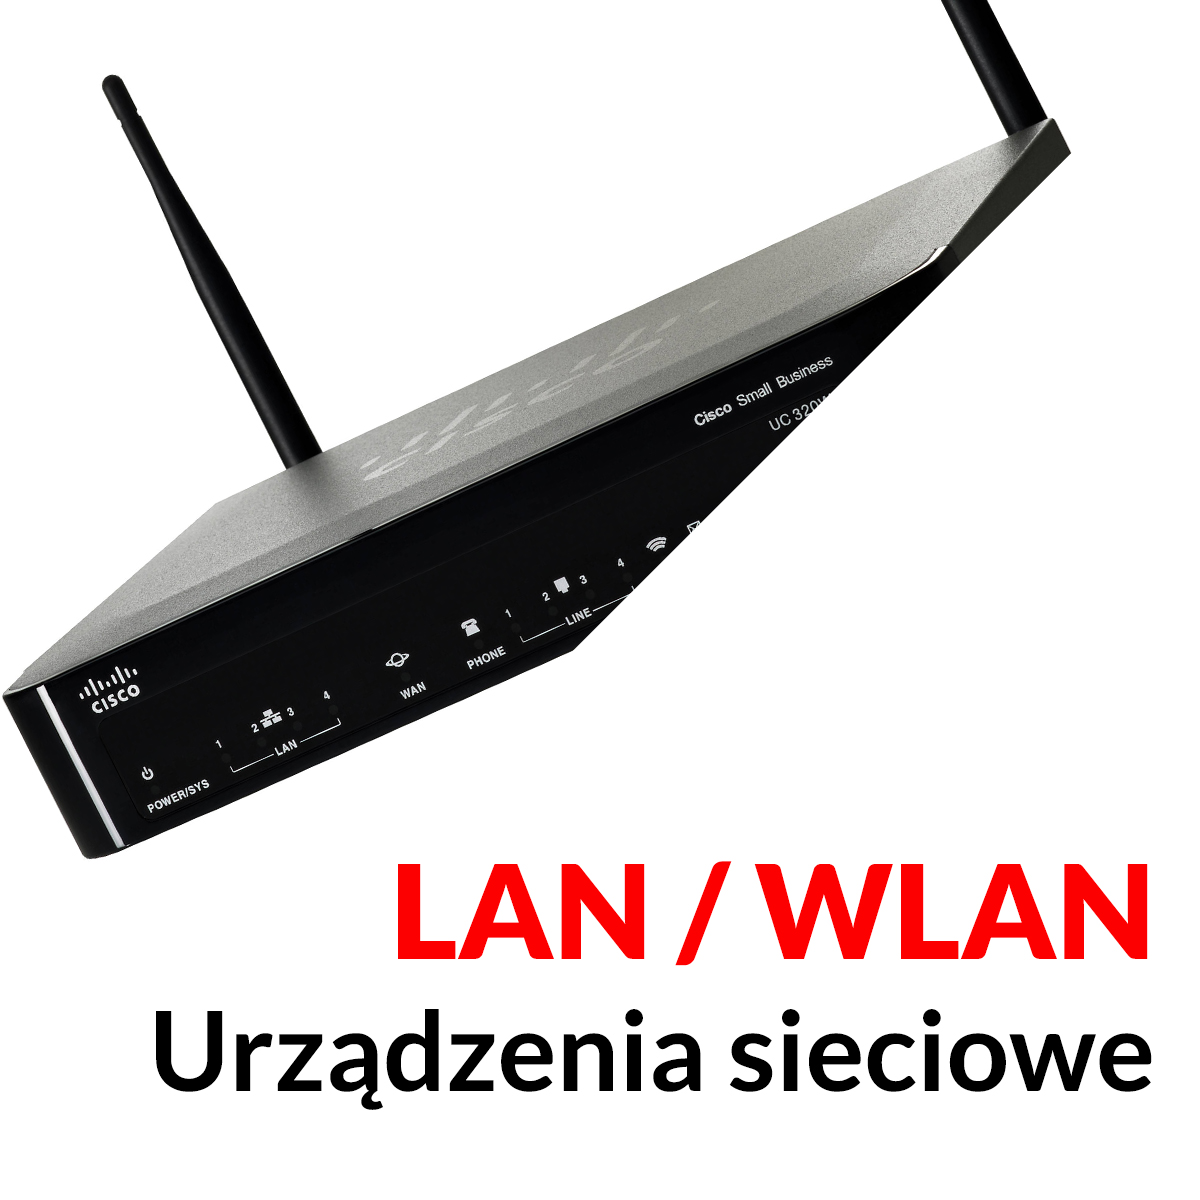 Urządzenia sieciowe - LAN / WLAN